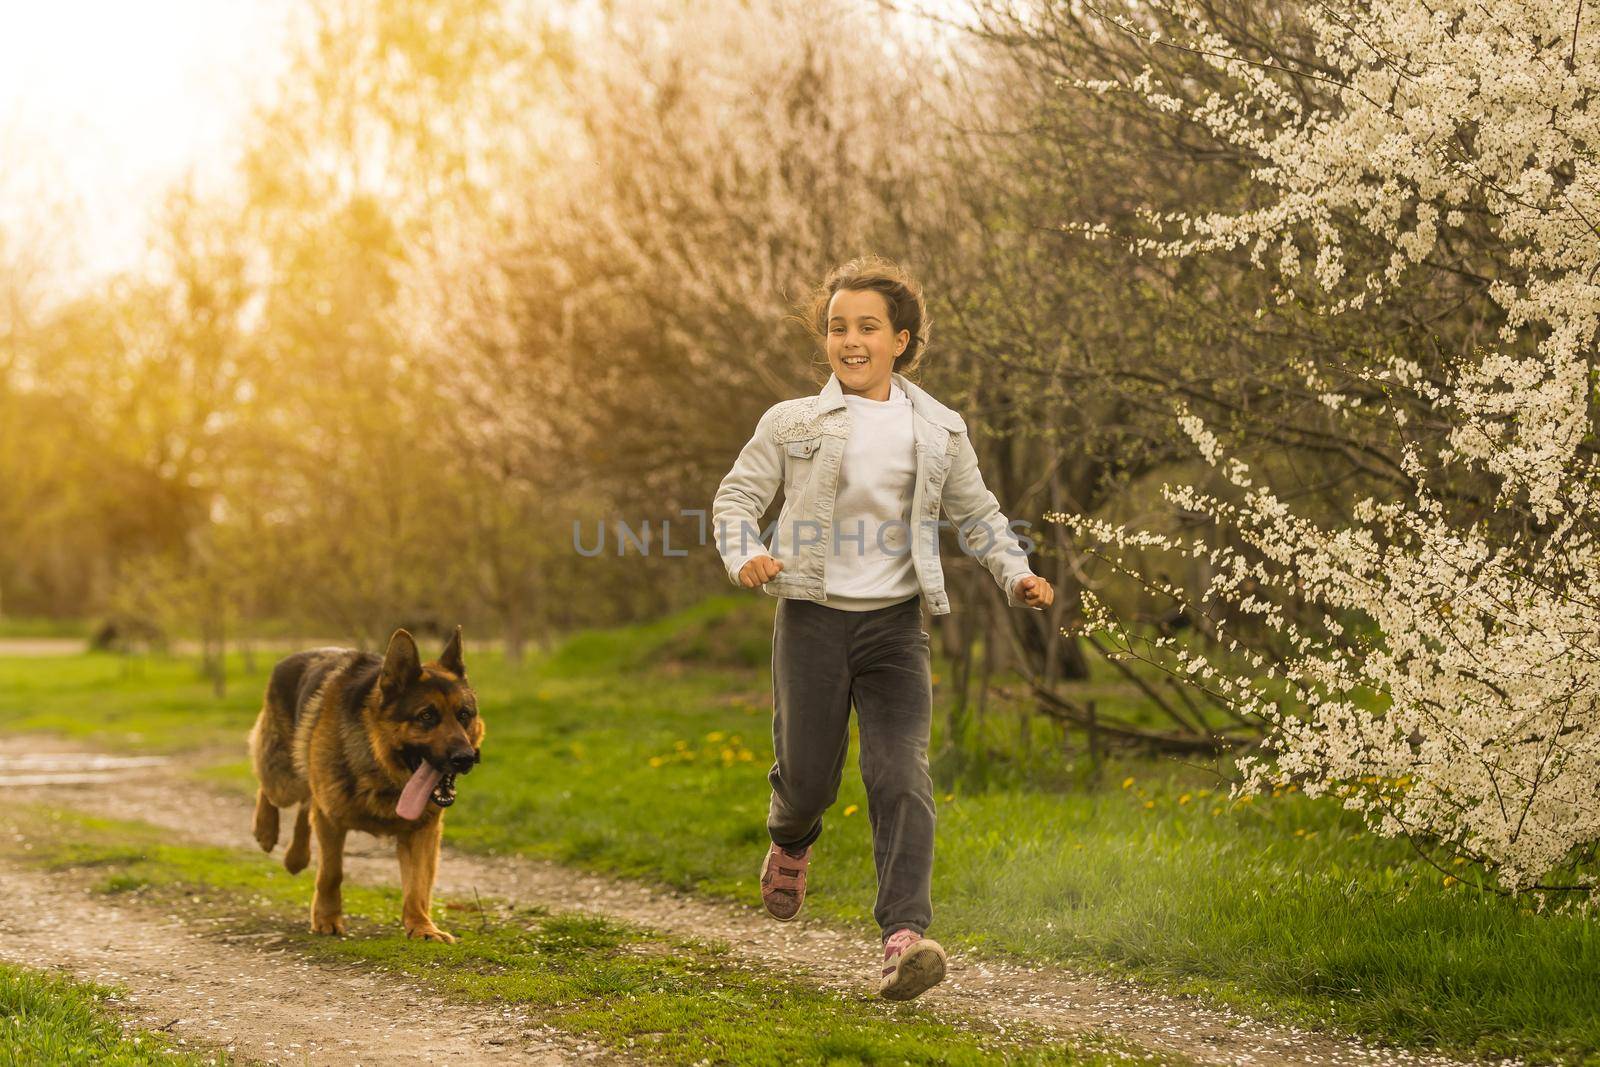 little girl running with a dog in a flower garden.